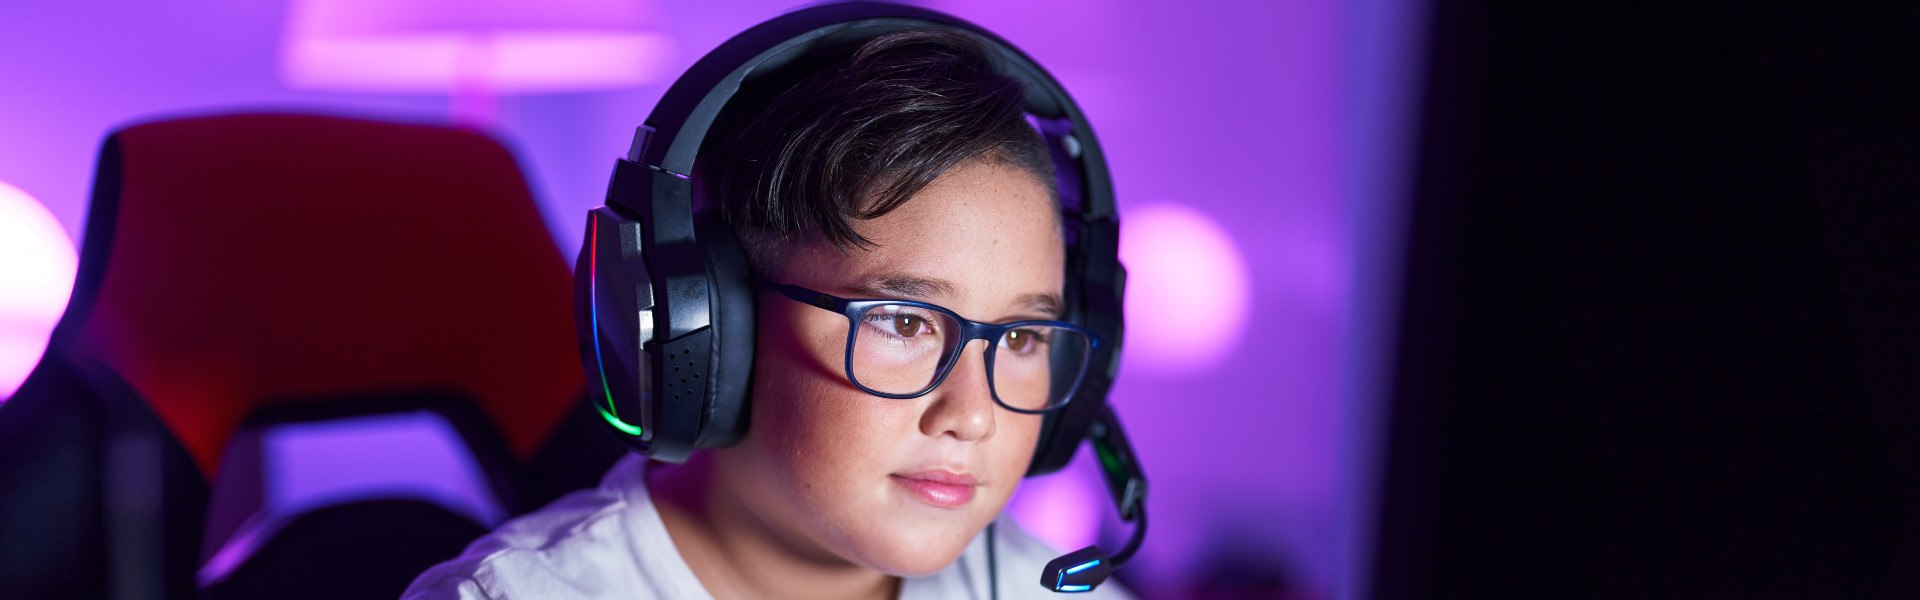 okulary do komputera dla graczy chłopiec